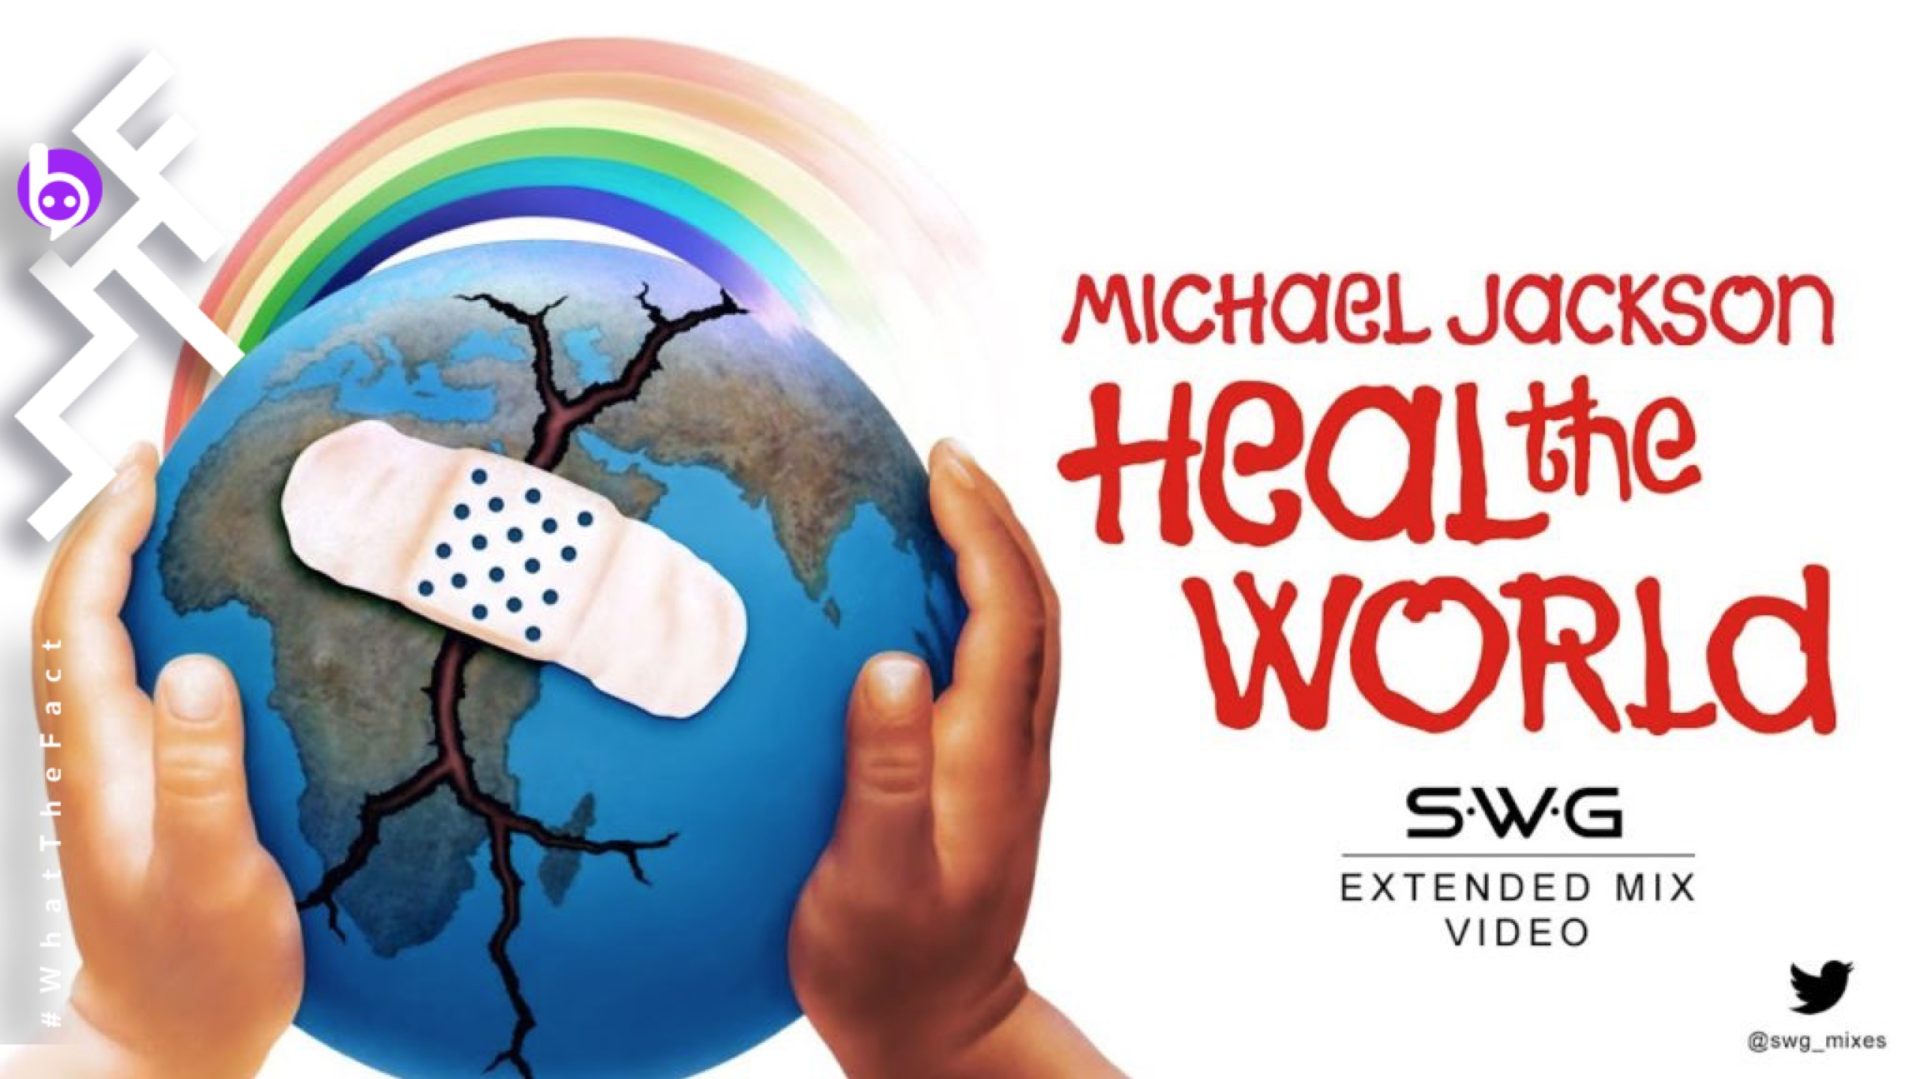 ชมมิวสิกวิดีโอ “Heal The World” บทเพลงอบอุ่นหนุนใจในเวอร์ชันมิกซ์และตัดต่อใหม่ผสานไปกับภาพสถานการณ์ไวรัสโคโรนา